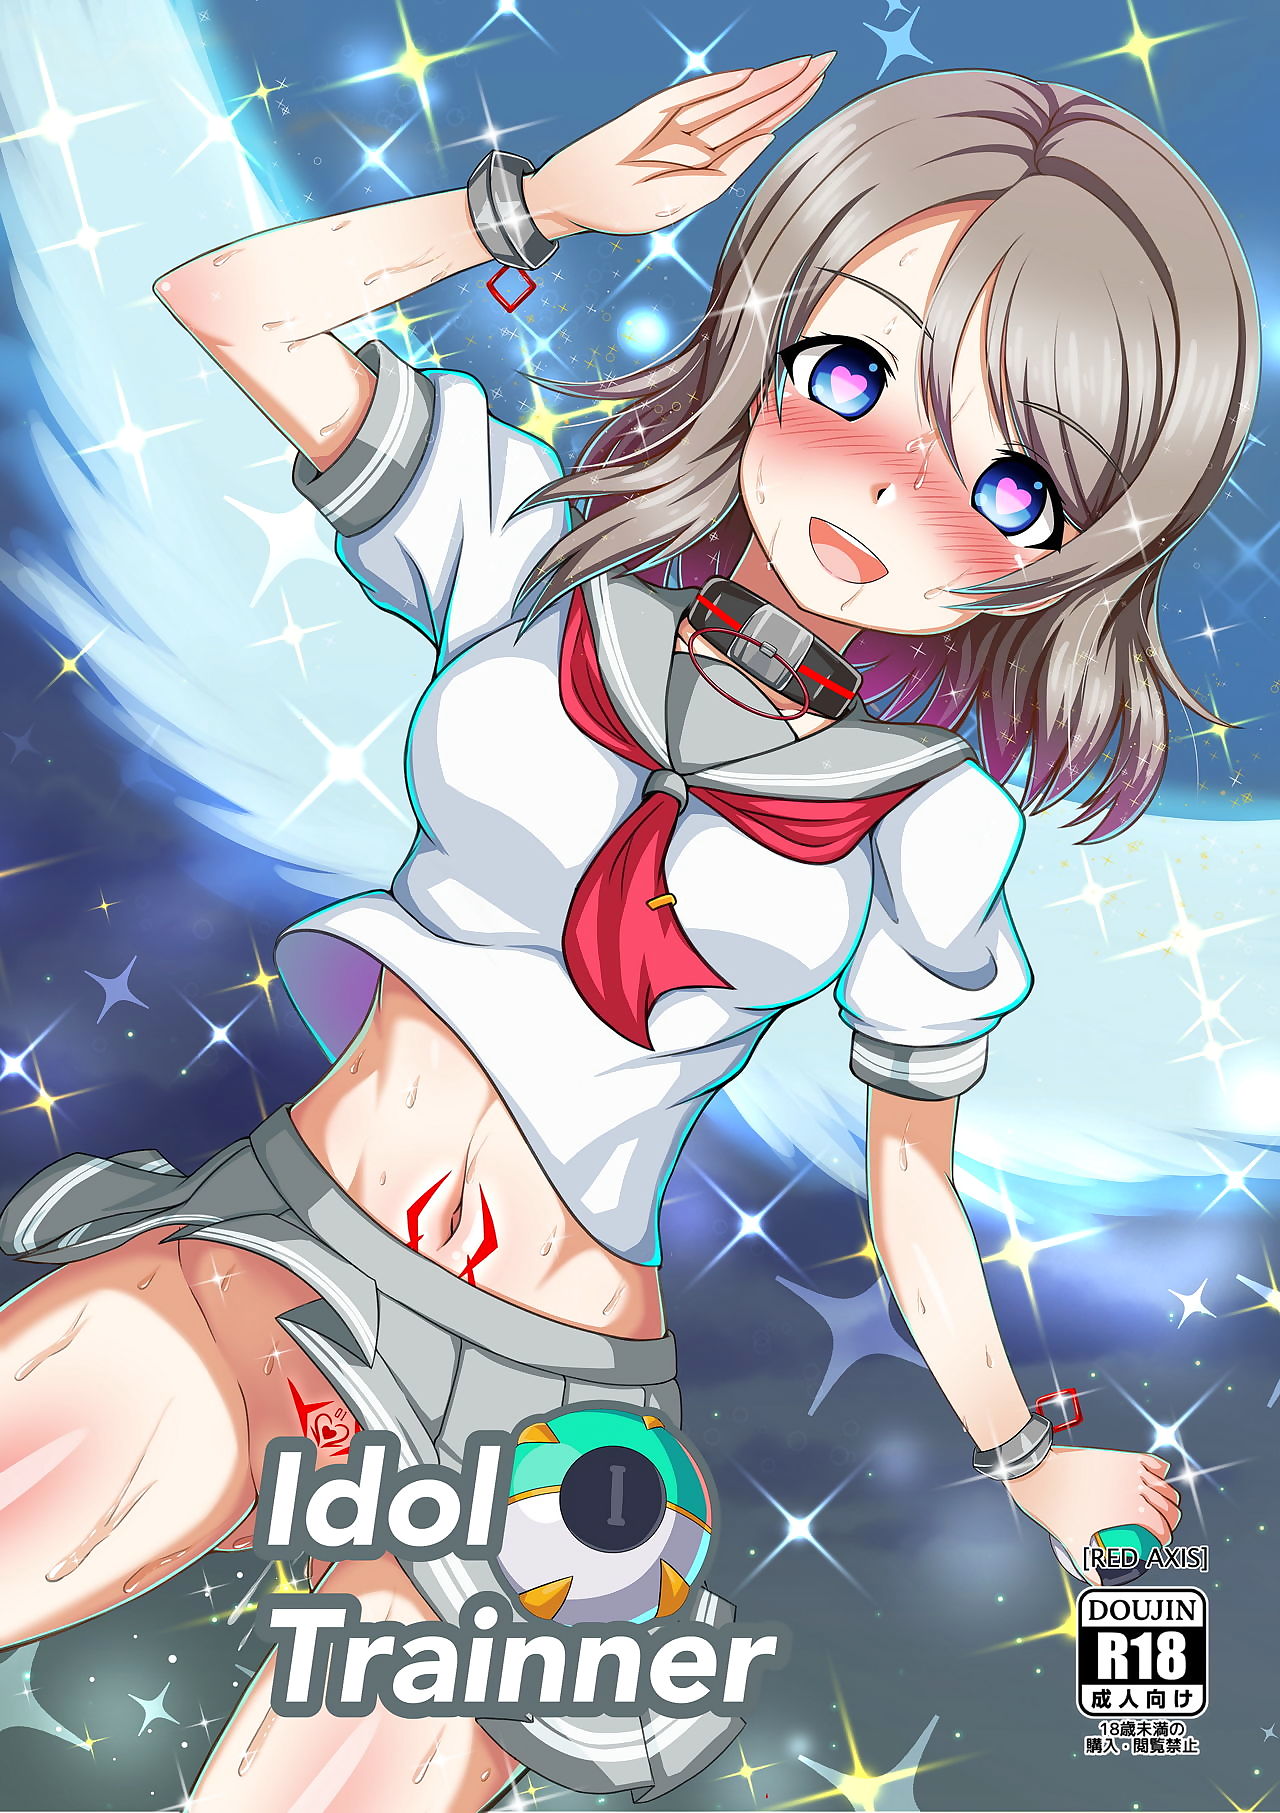 Idol Trainner